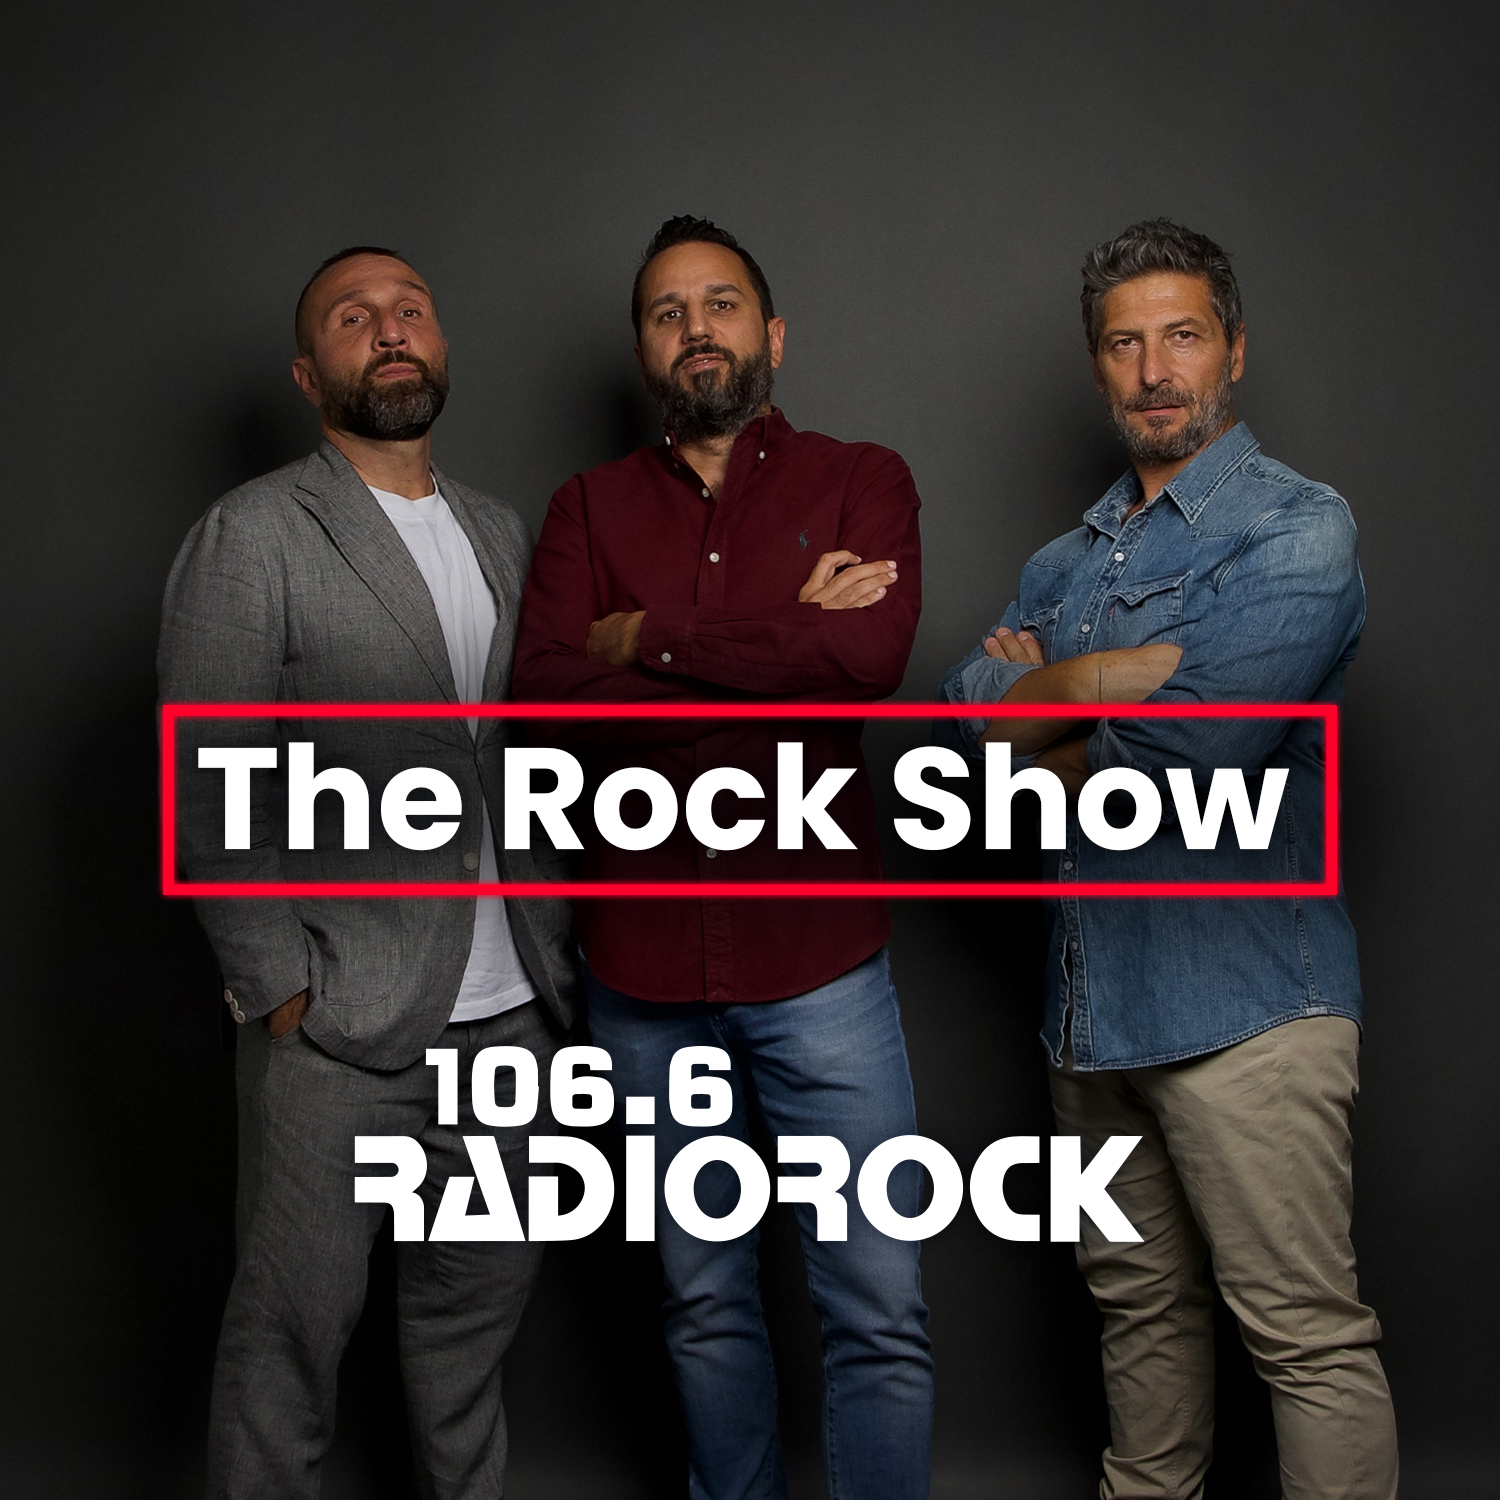 The Rock Show - S07E045: Quanti anni avevi nel 1990? (07-11-23)